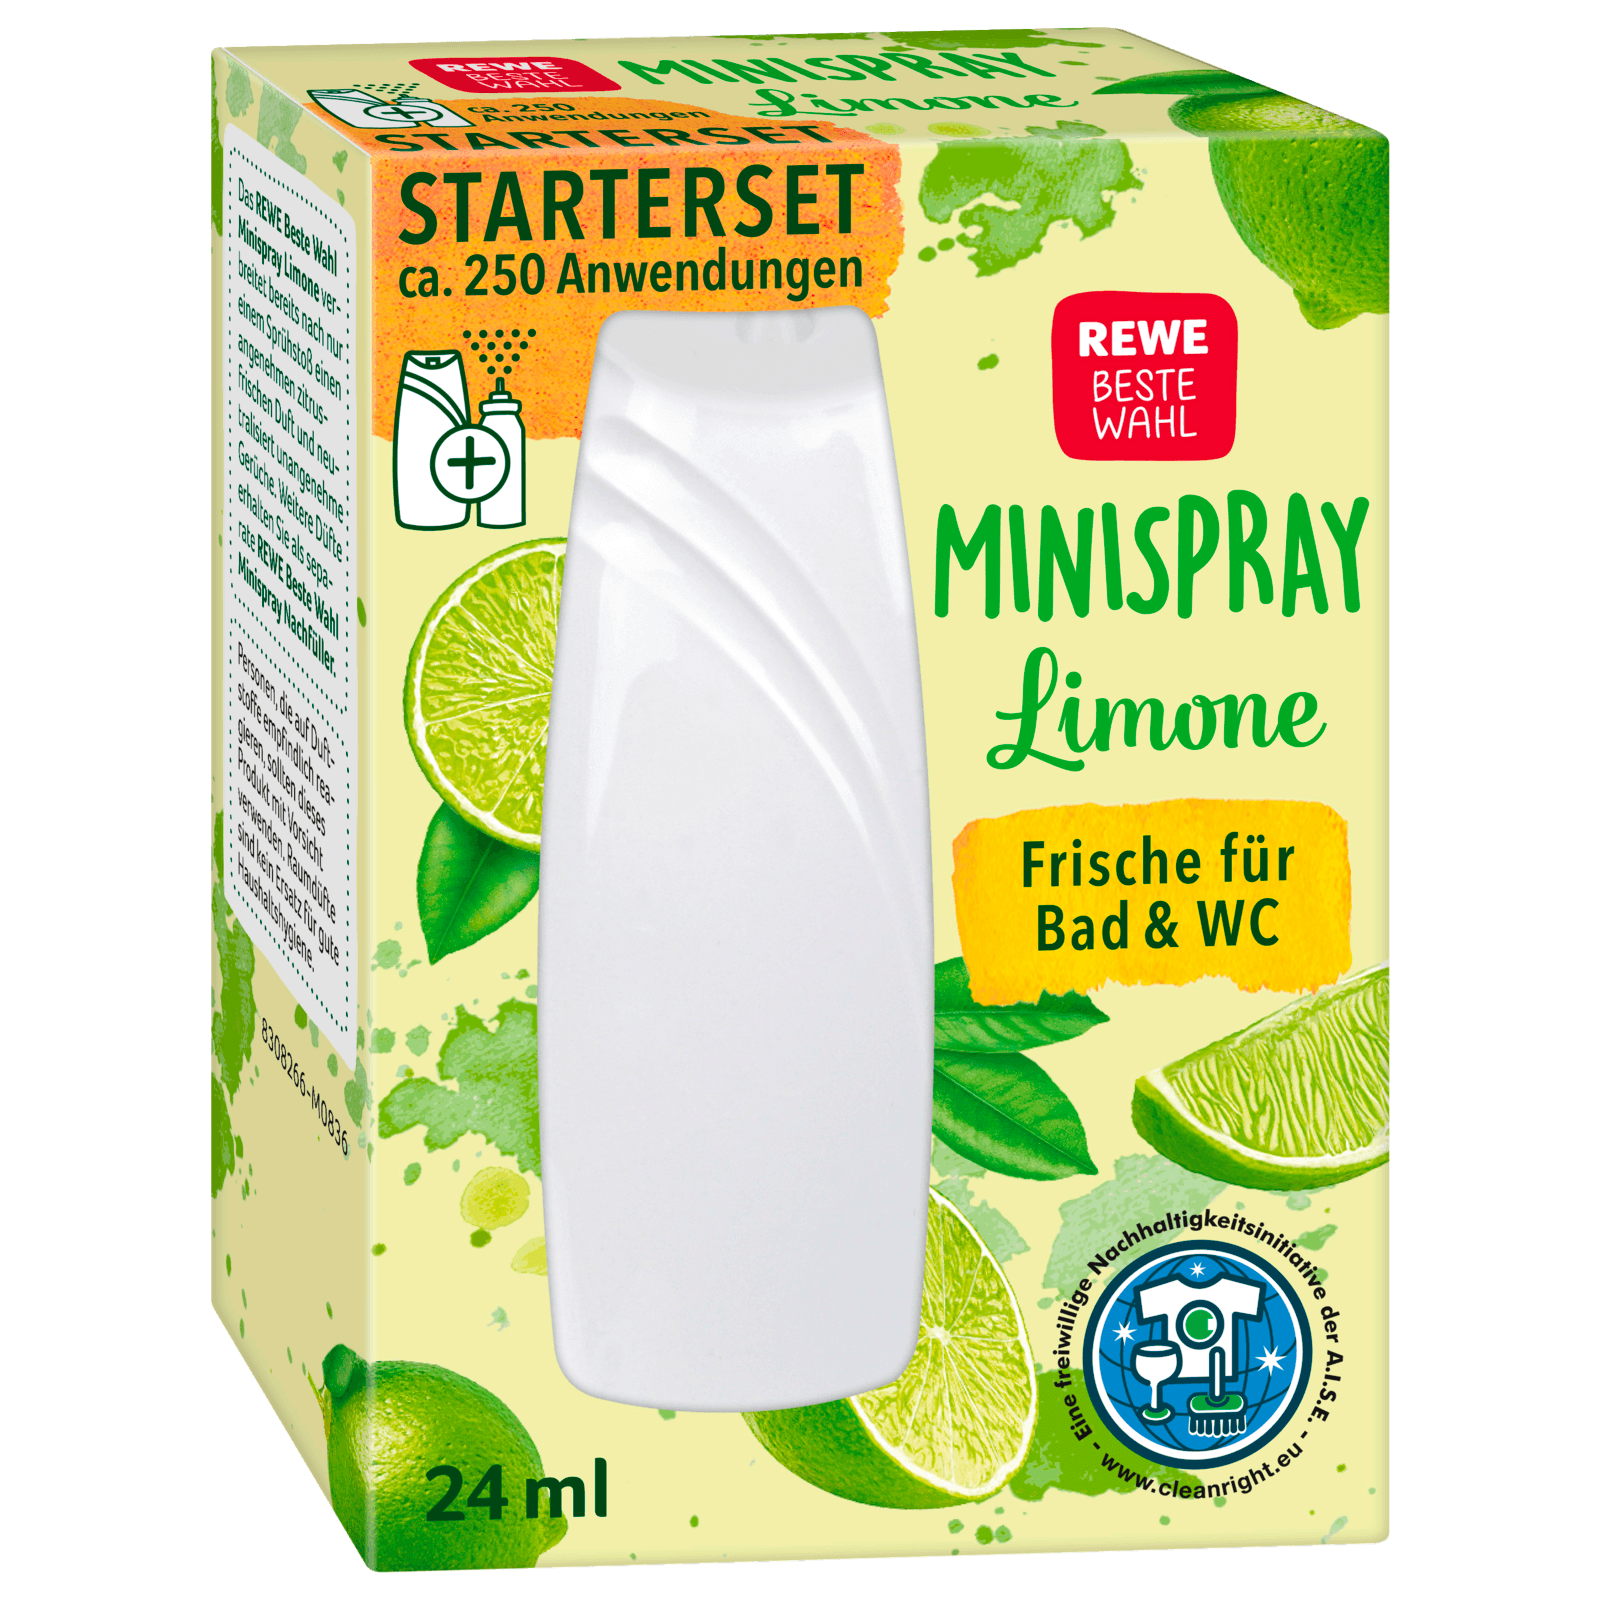 REWE Beste Wahl Mini Duft-Spray Limone 24ml bei REWE online bestellen!